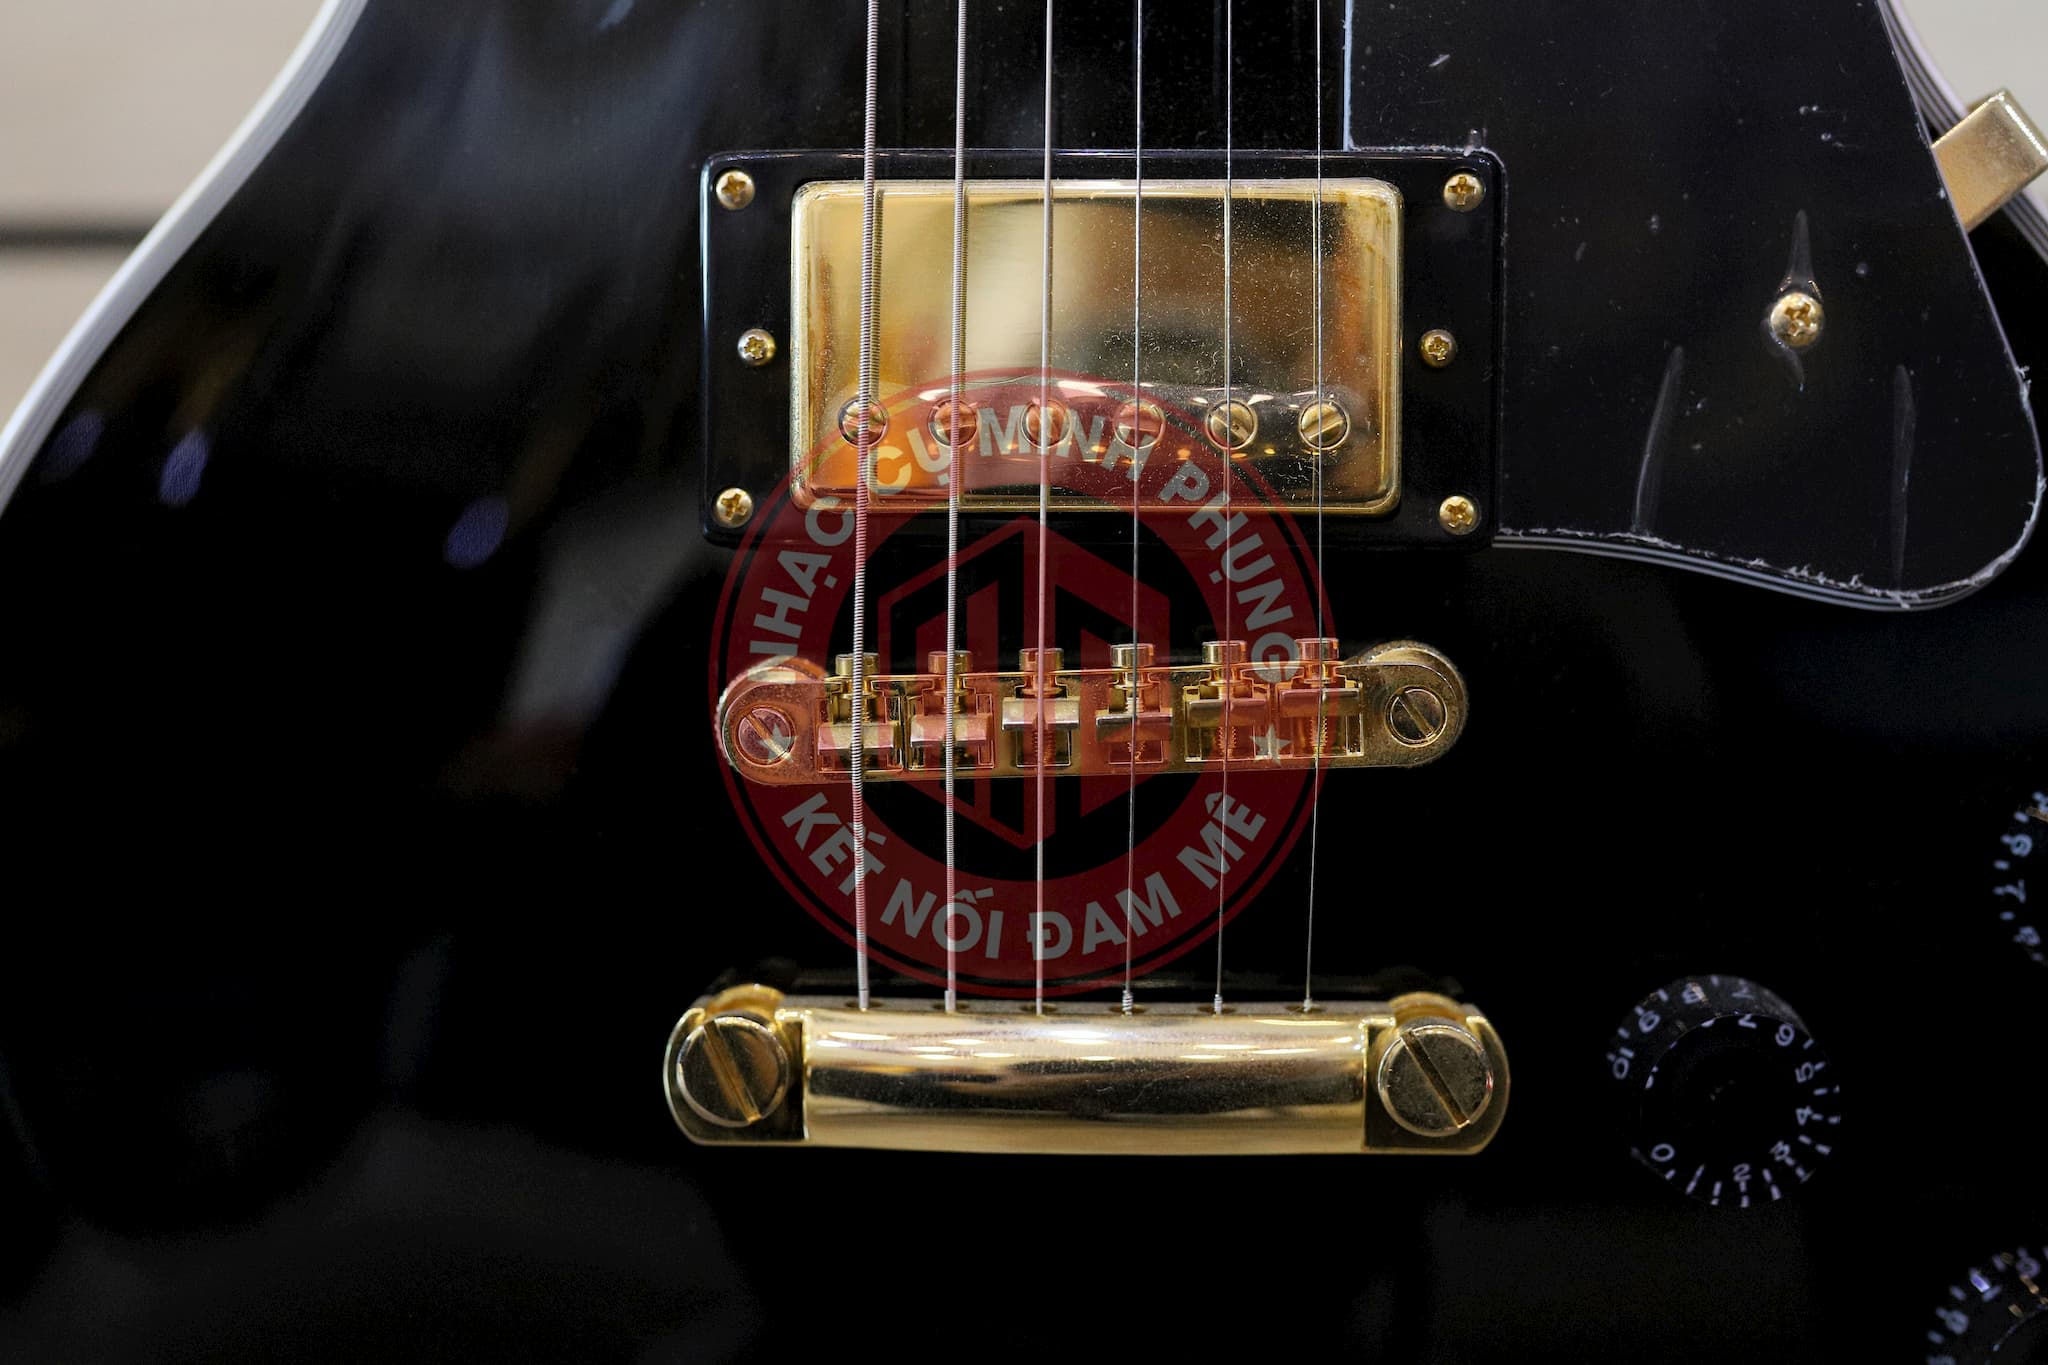 Đàn Guitar Điện Tokai ALC62 BB